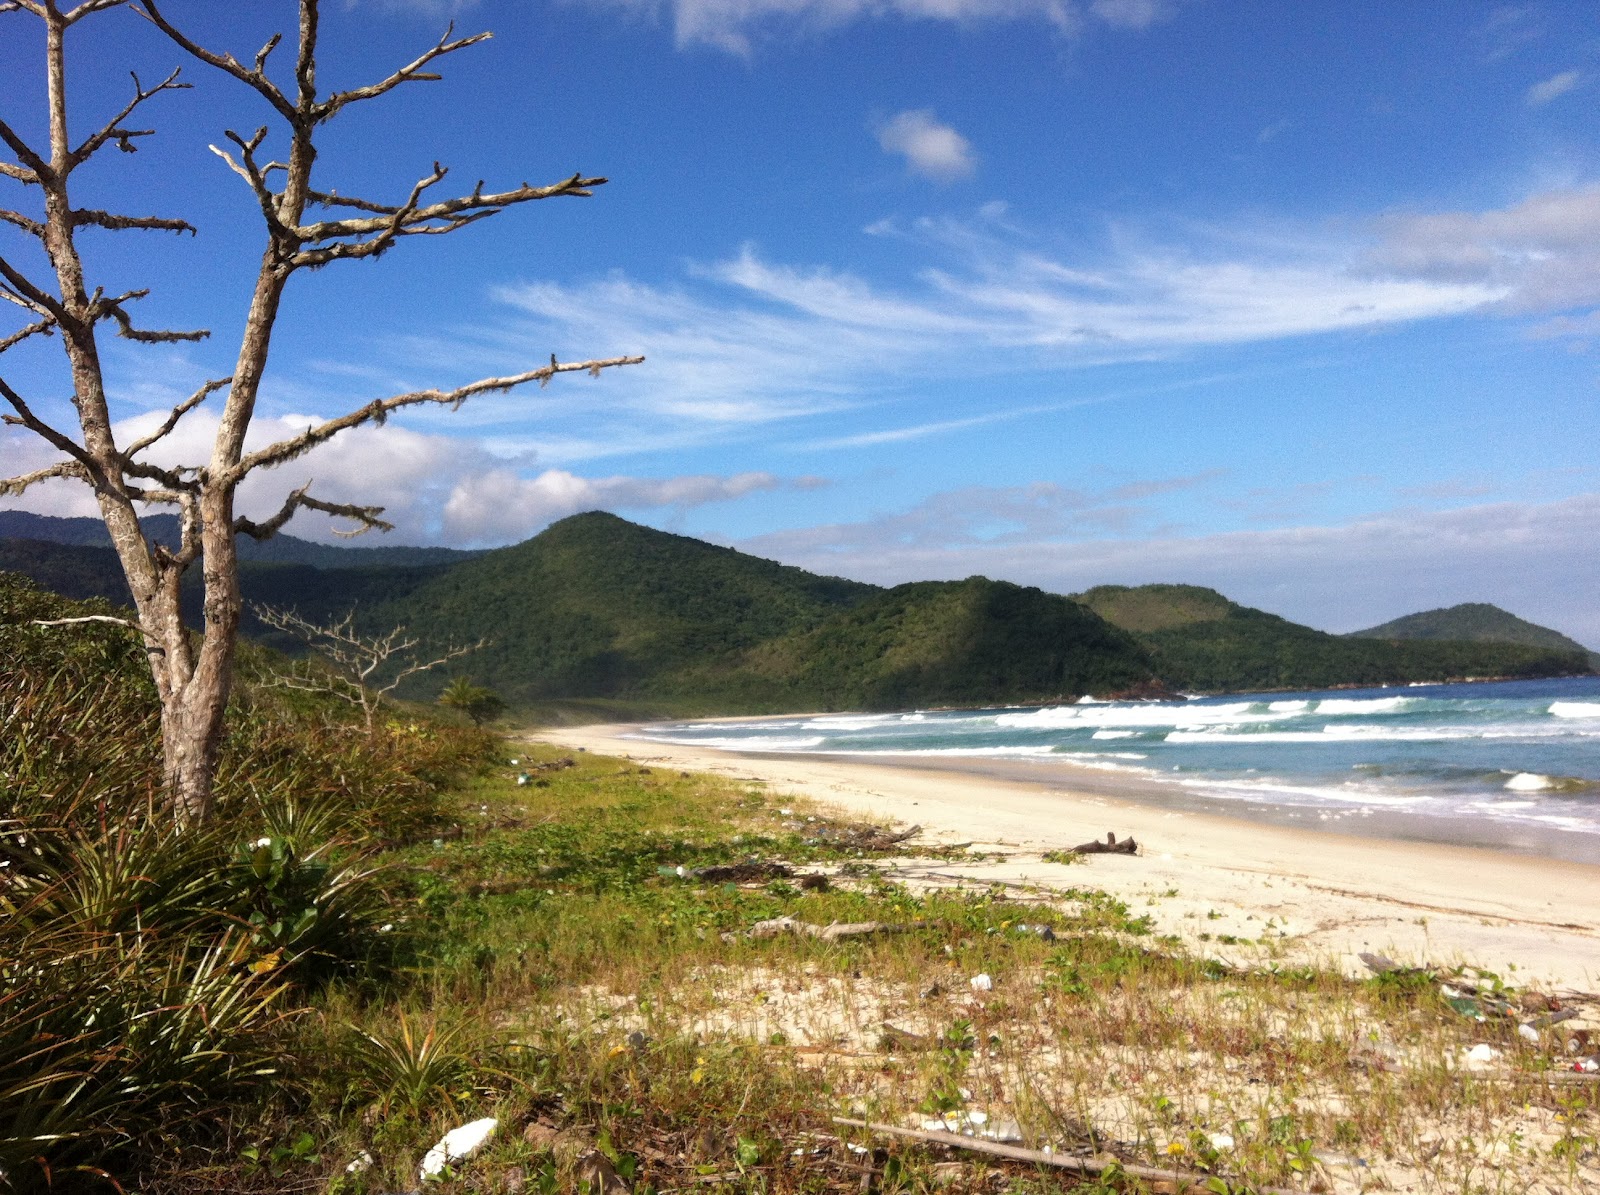 Fotografija Praia do Leste nahaja se v naravnem okolju